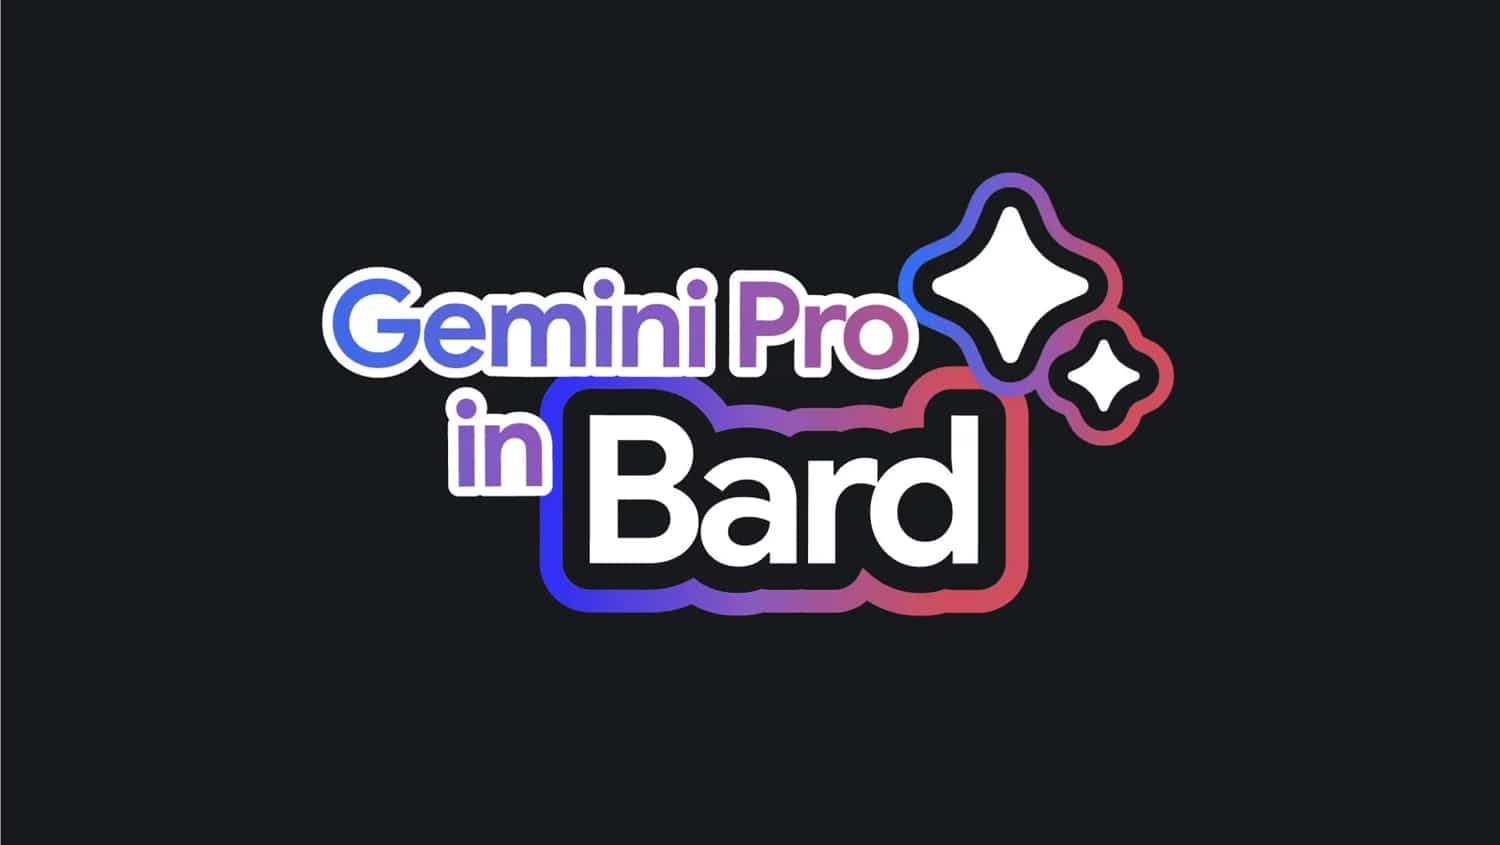 Schwarzes Banner mit Schriftzug "Gemini Pro in Bard"